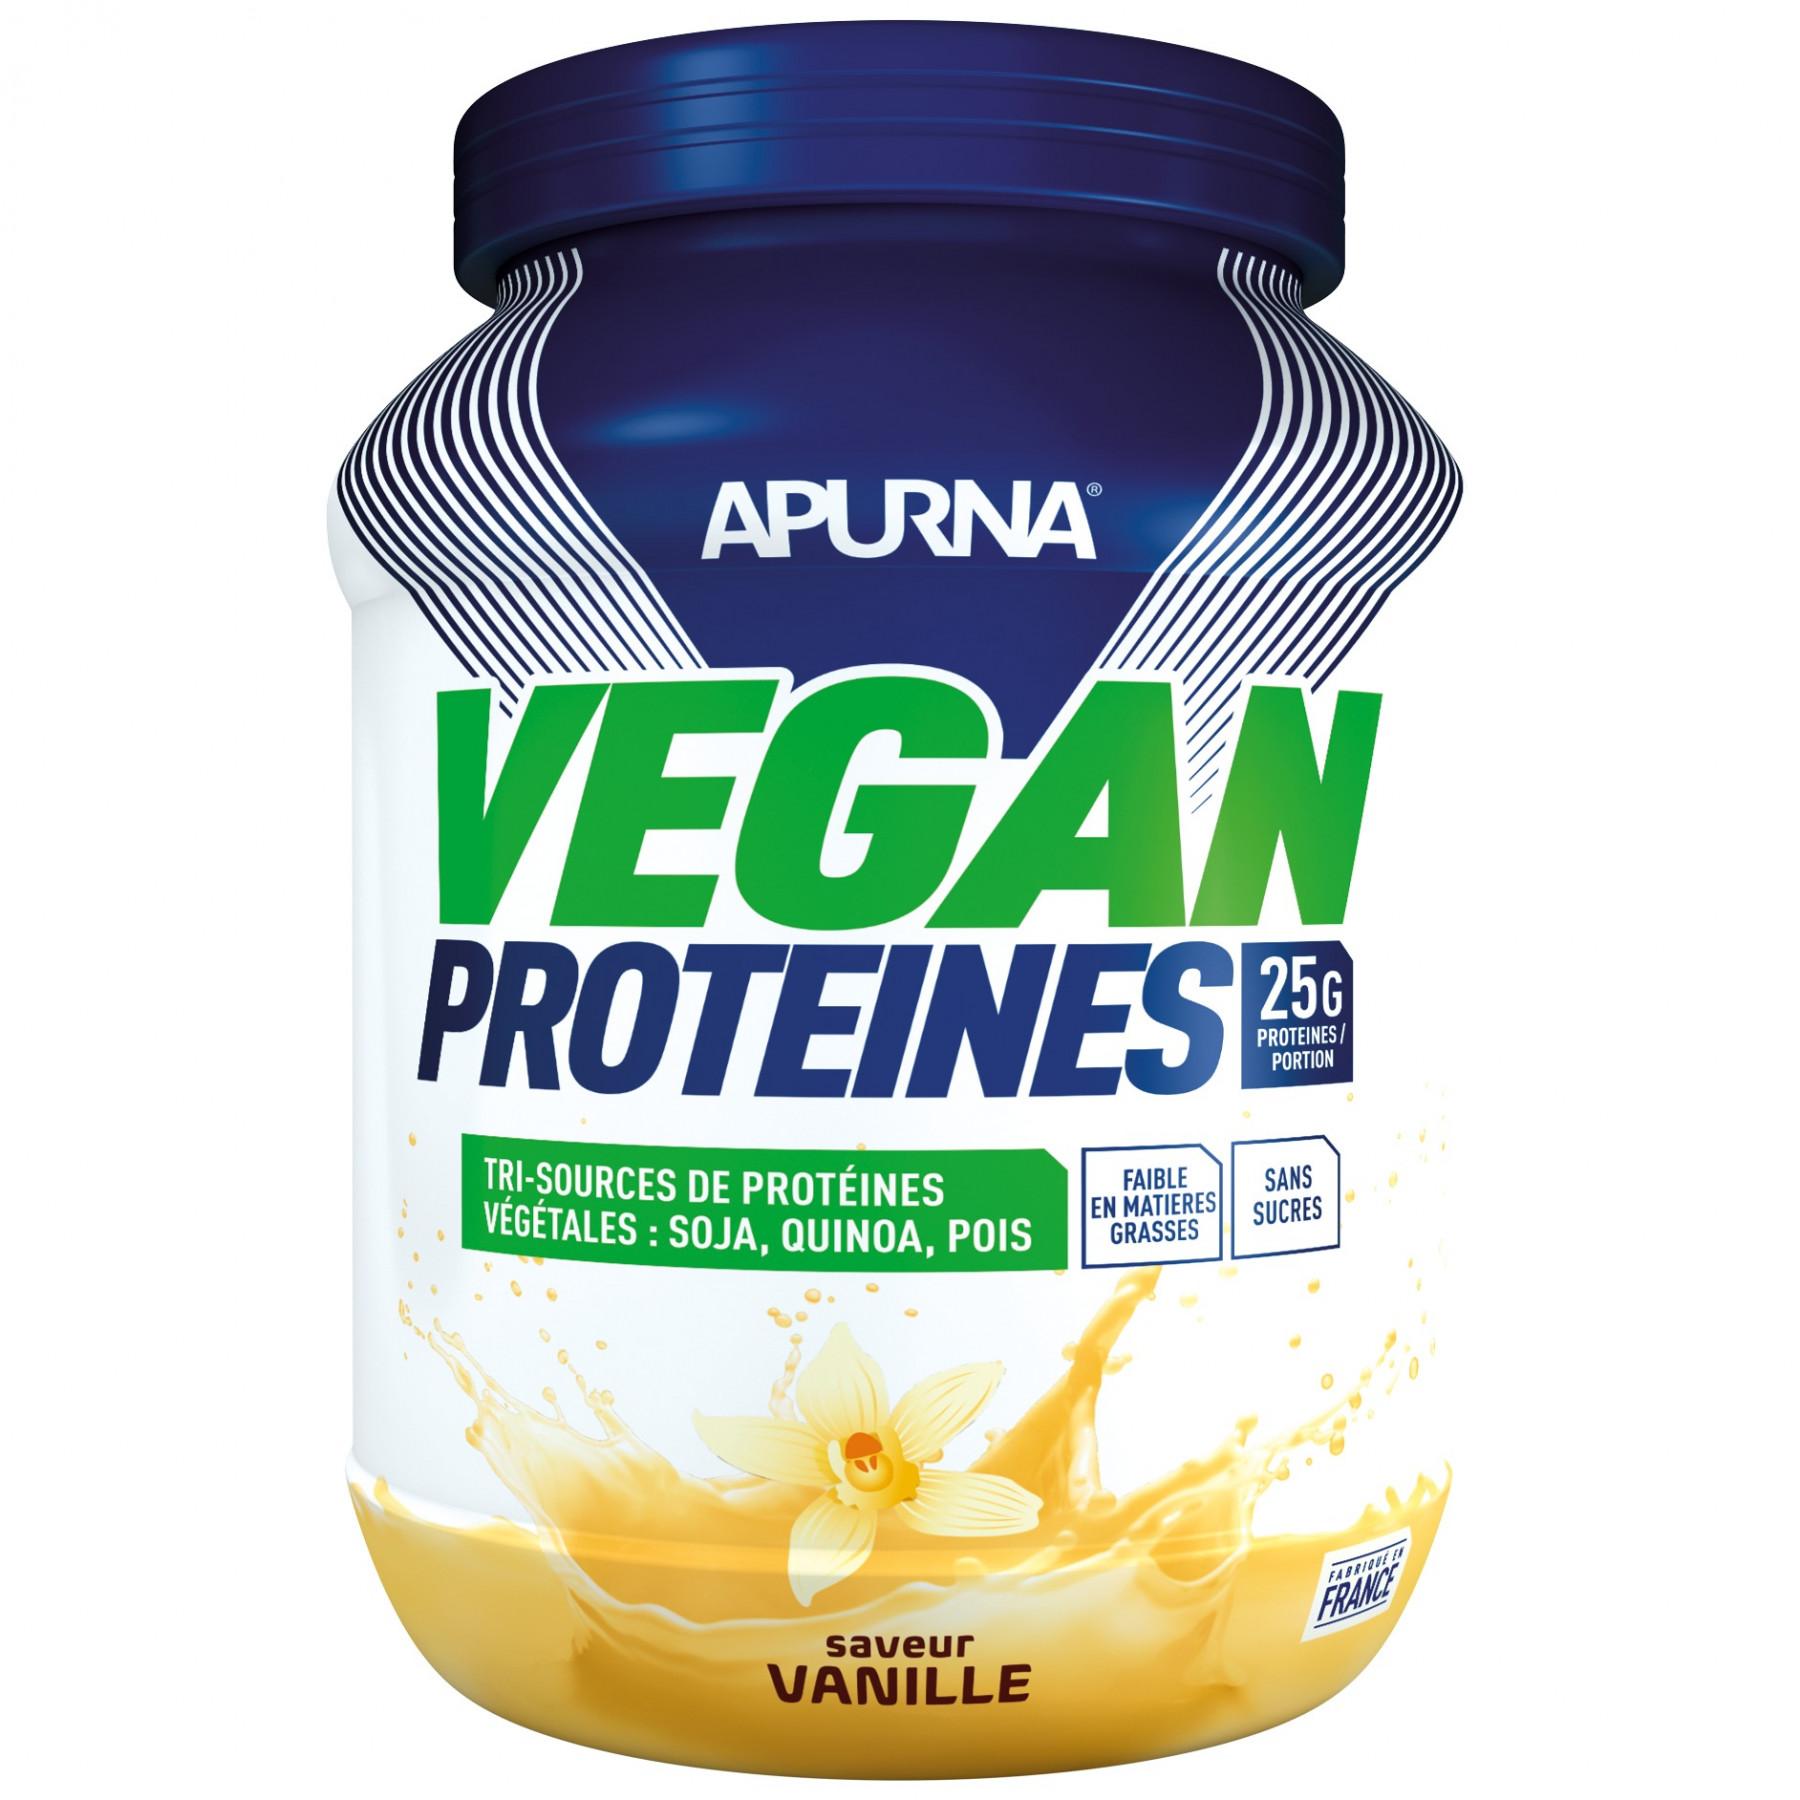 Vegan proteïne Apurna Vanille - Pot 600g